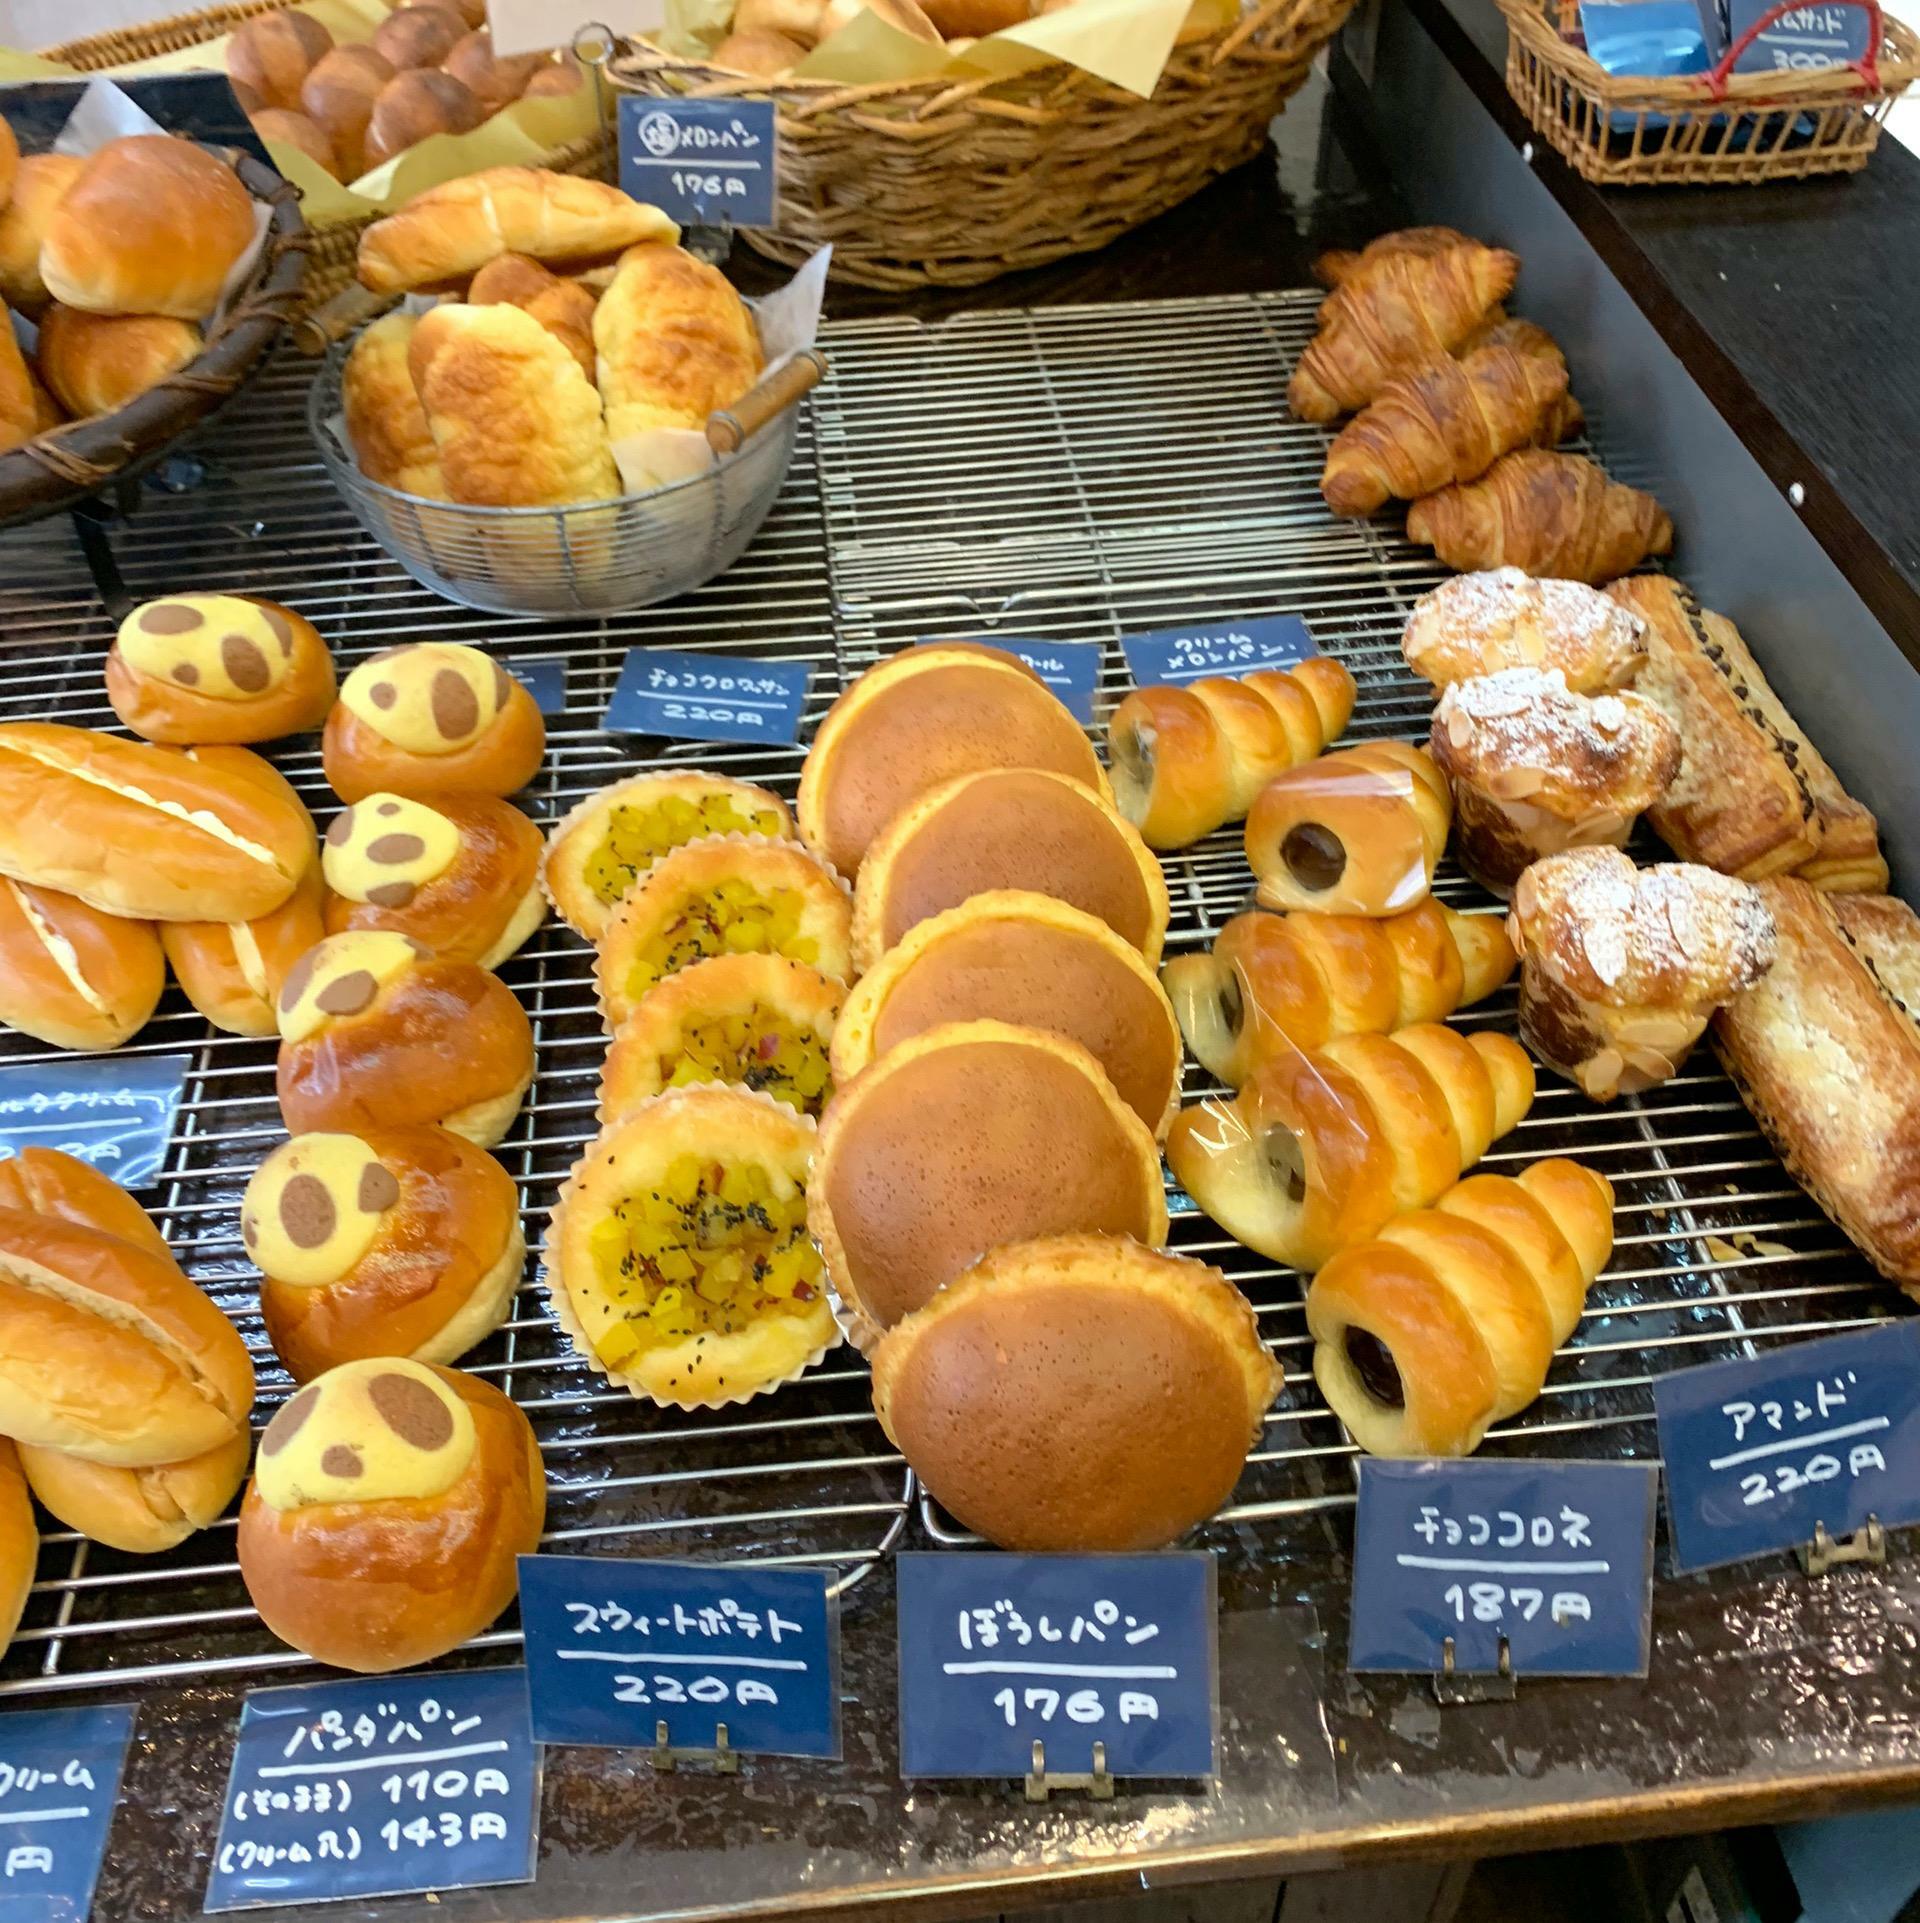 フクスケベーカリーで販売されているパンは個性豊かでリーズナブルさが印象的でした。